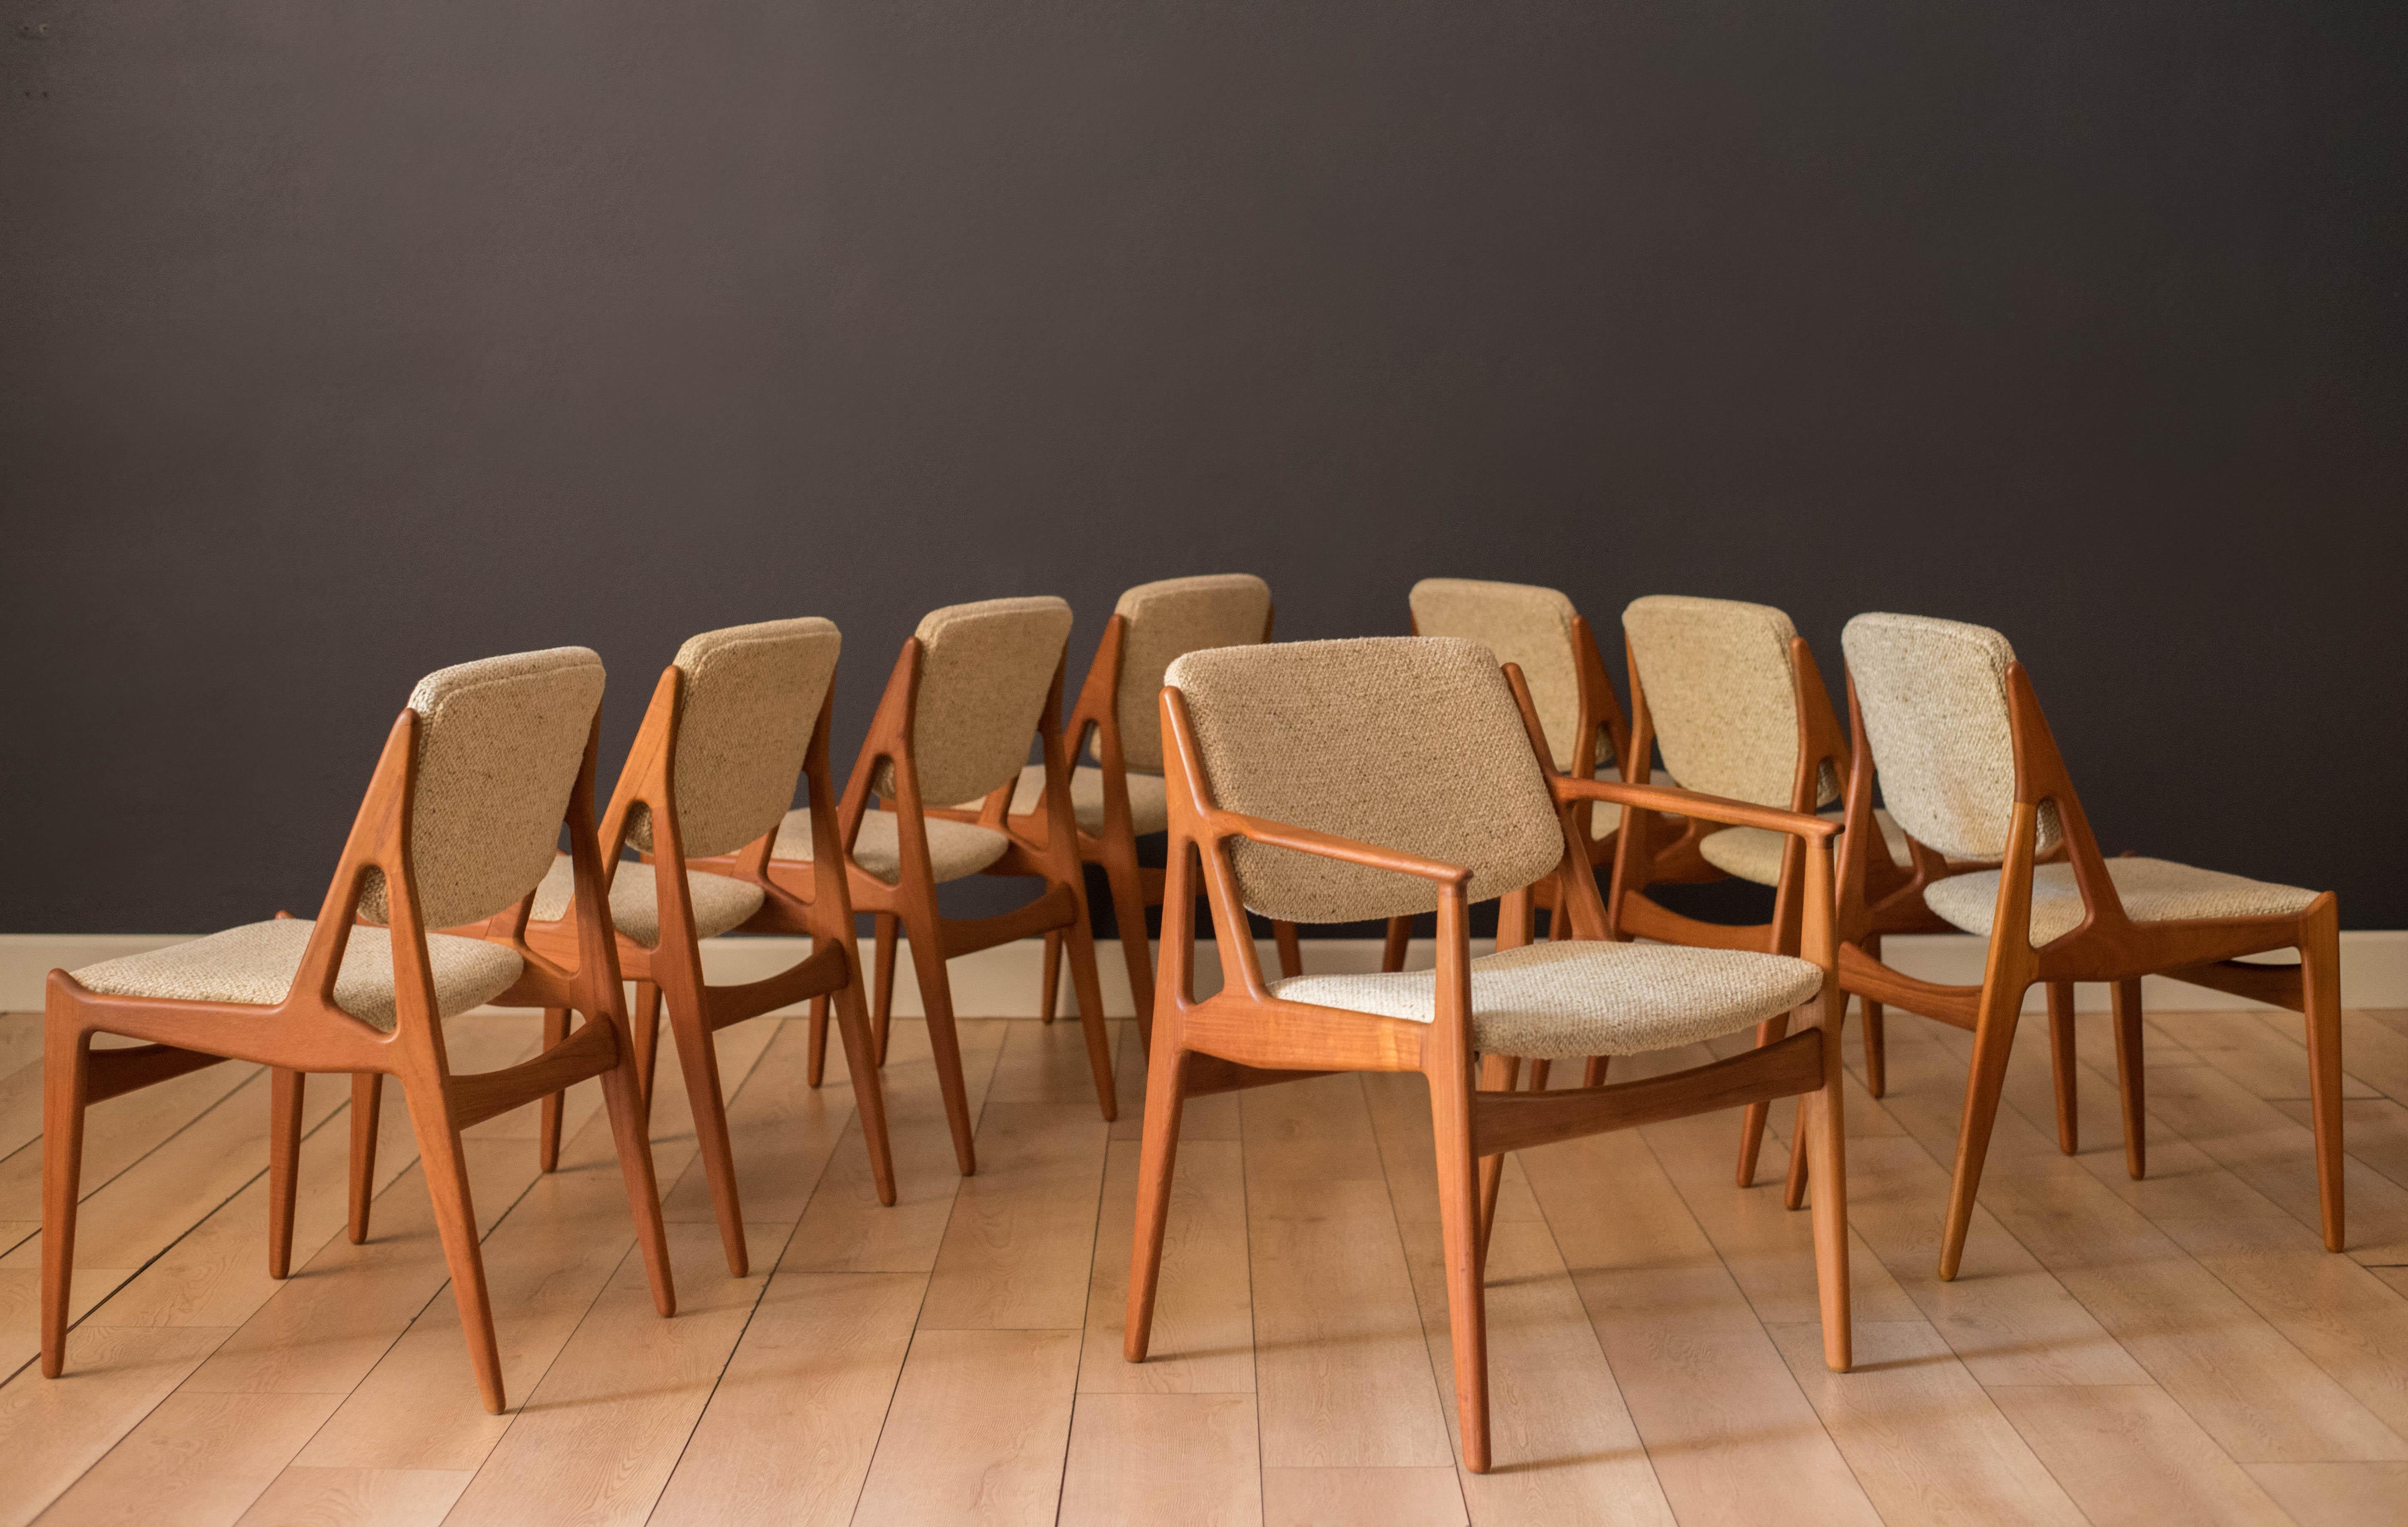 Modernes Set aus acht 'Ella'-Esszimmerstühlen, entworfen von Arne Vodder für Vamo Sonderborg, ca. 1960er Jahre. Mit einem skulpturalen Rahmen aus massivem Teakholz und einer einzigartigen, drehbaren und neigbaren Rückenlehne aus einem